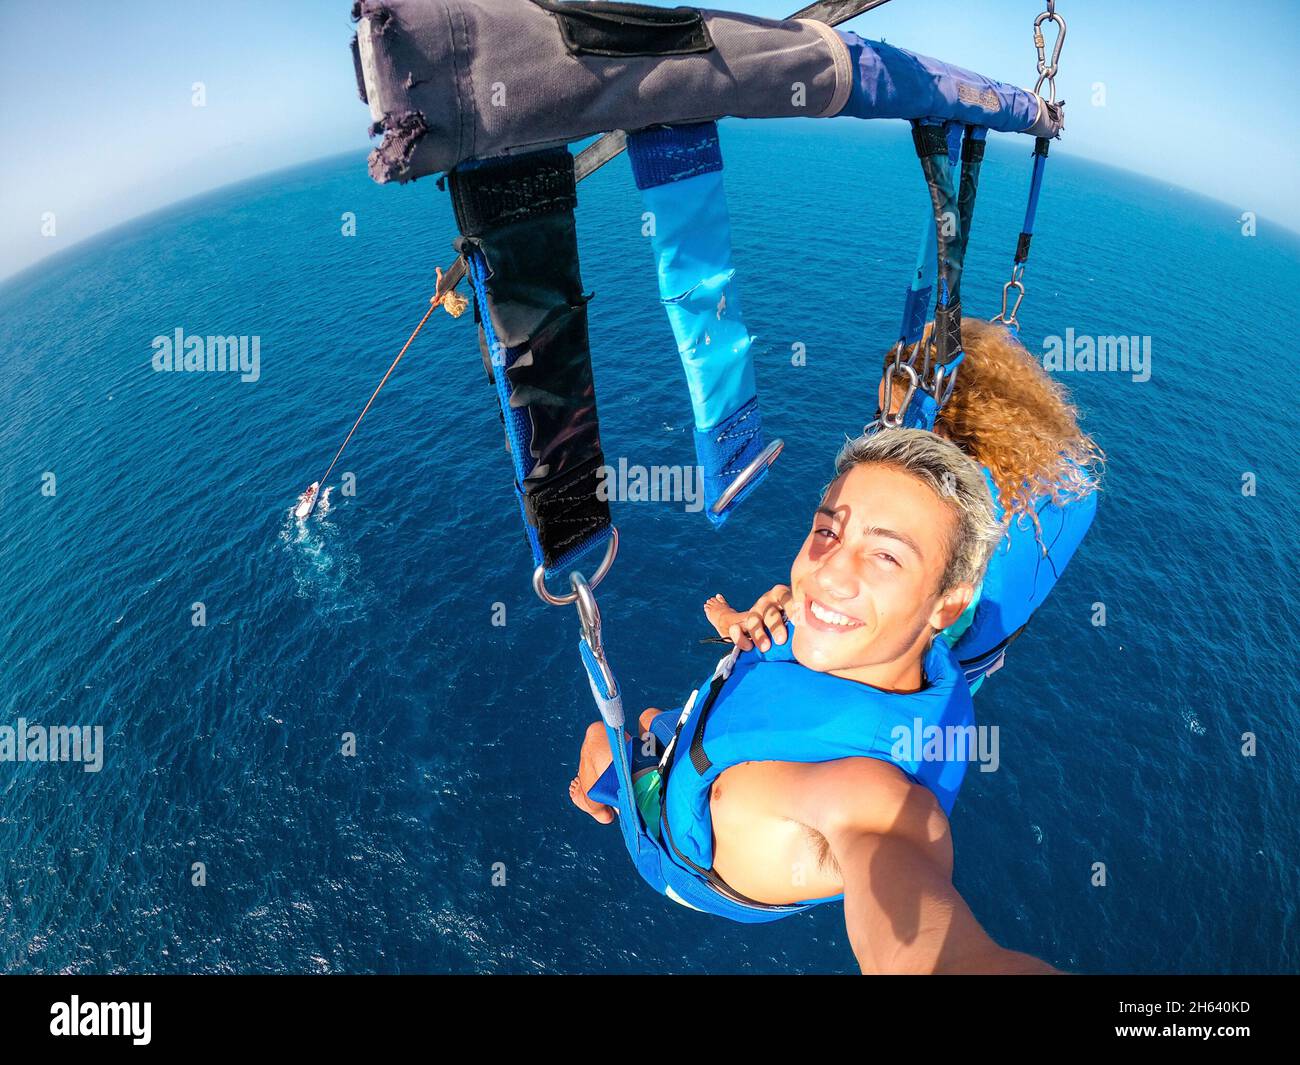 coppia di due persone felici godendo l'estate e le vacanze facendo attività estreme sul mare con una barca - persone belle prendendo un selfie mentre facendo paracadutismo insieme Foto Stock